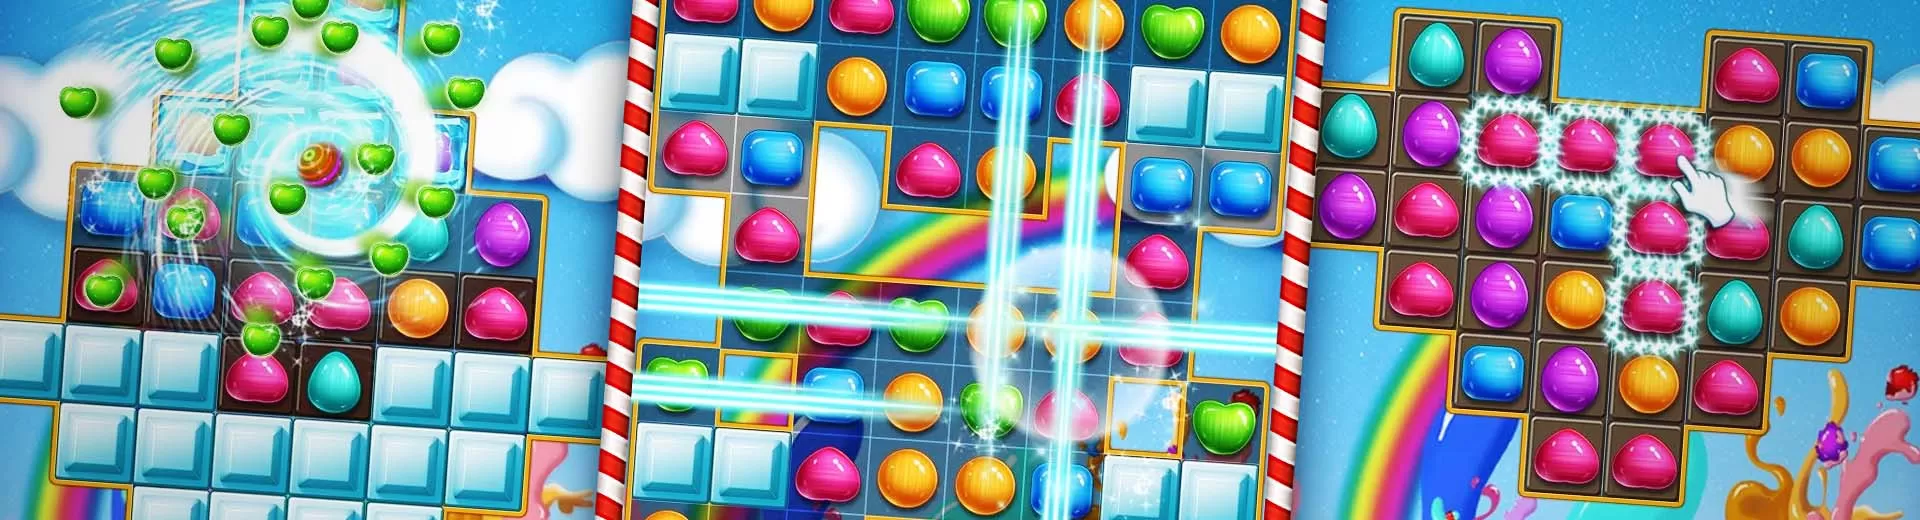 Amazing Candy Emulator Pc